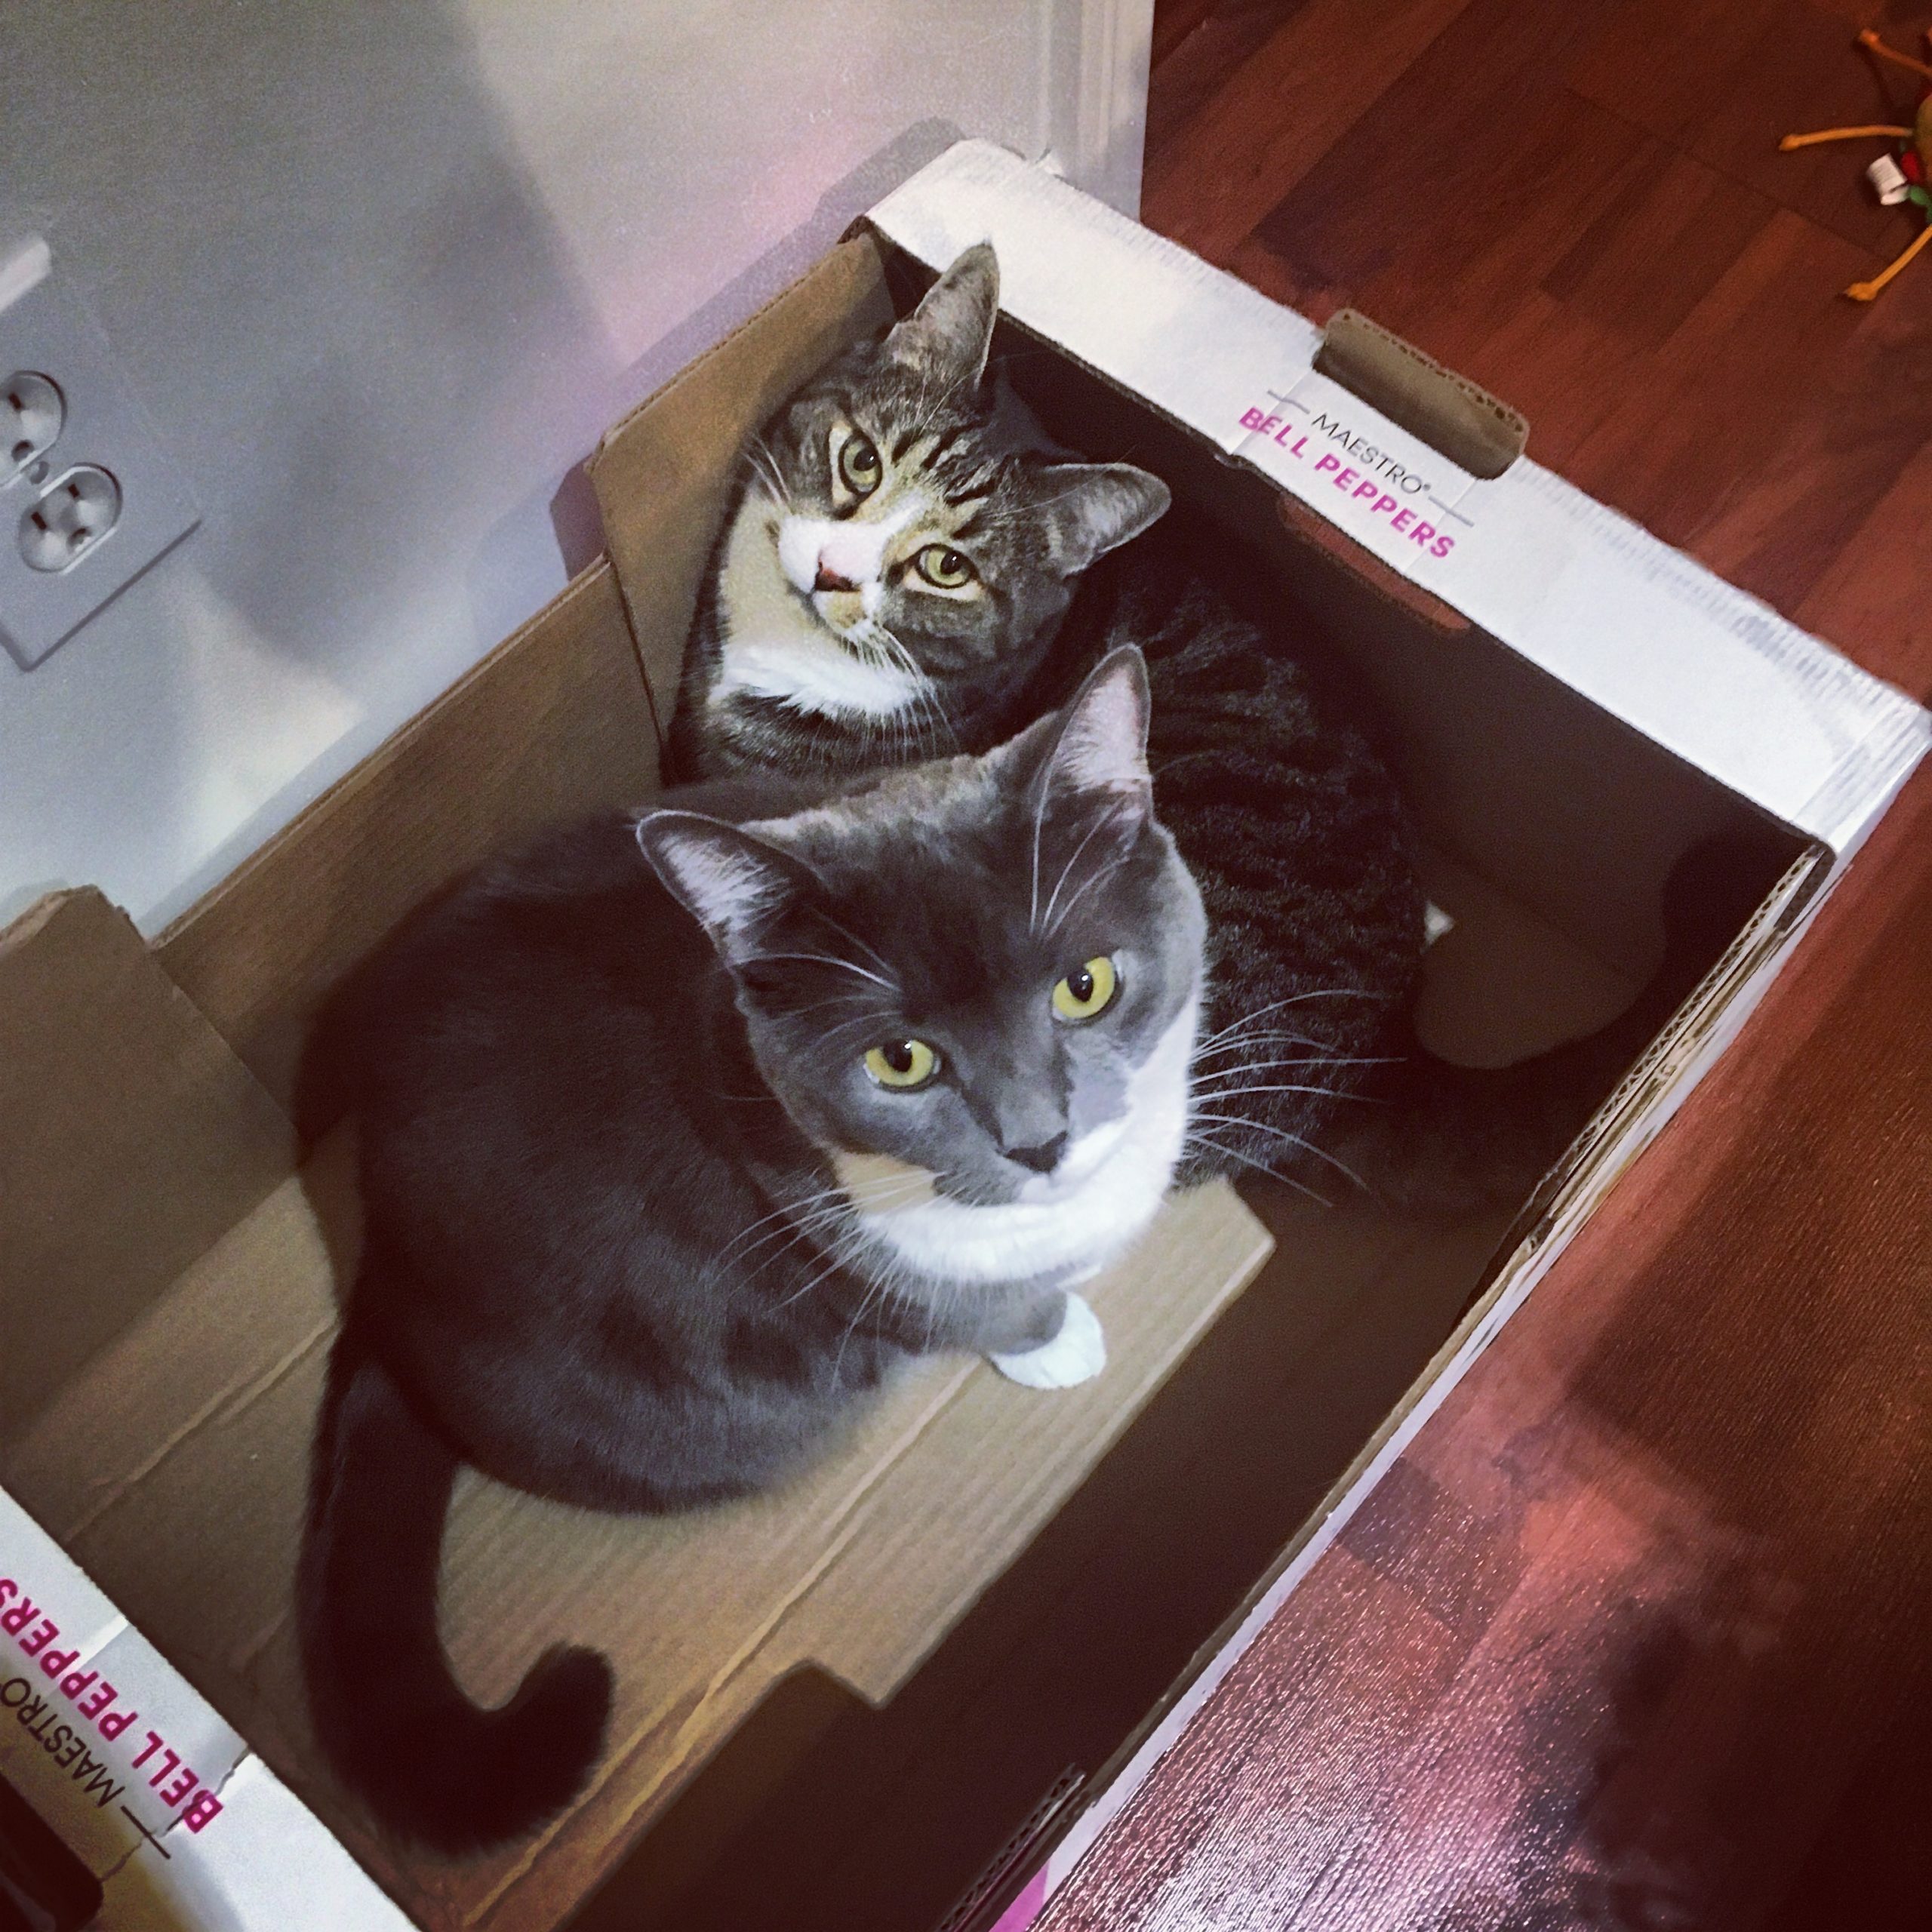 Watson & Crick in a Costco box